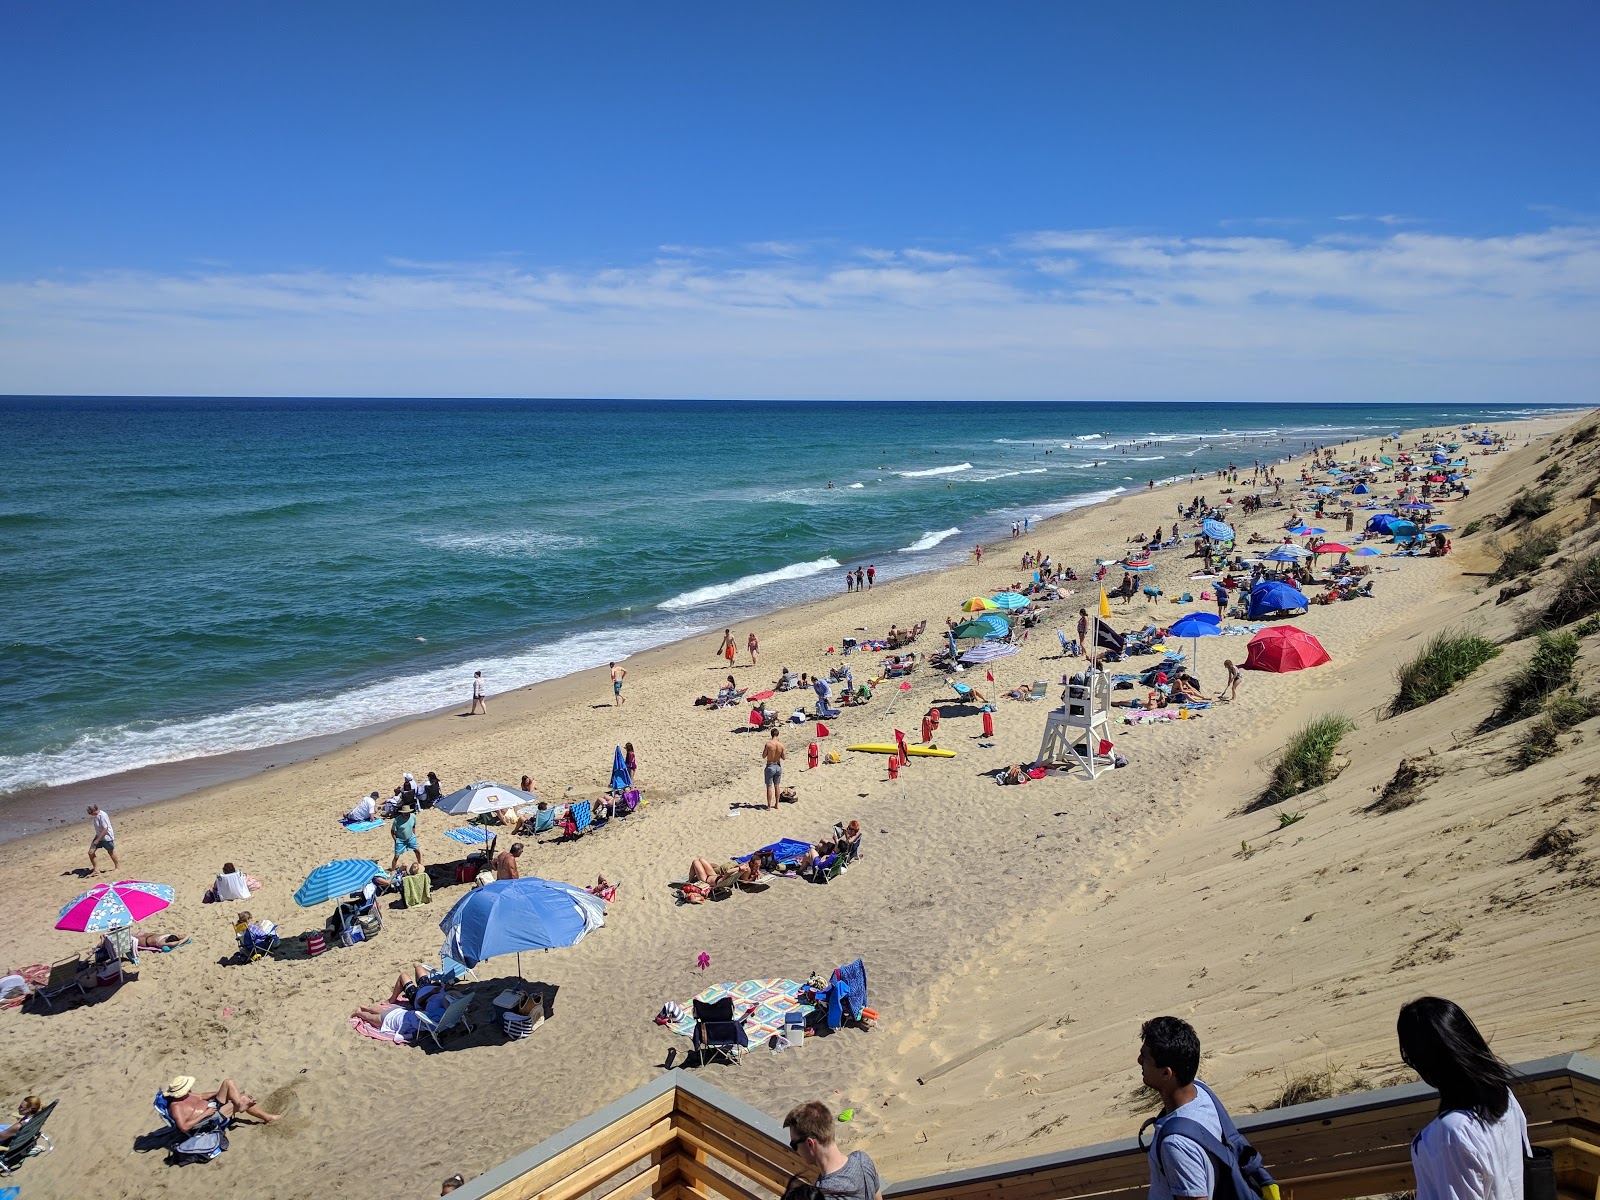 Marconi beach'in fotoğrafı parlak kum yüzey ile